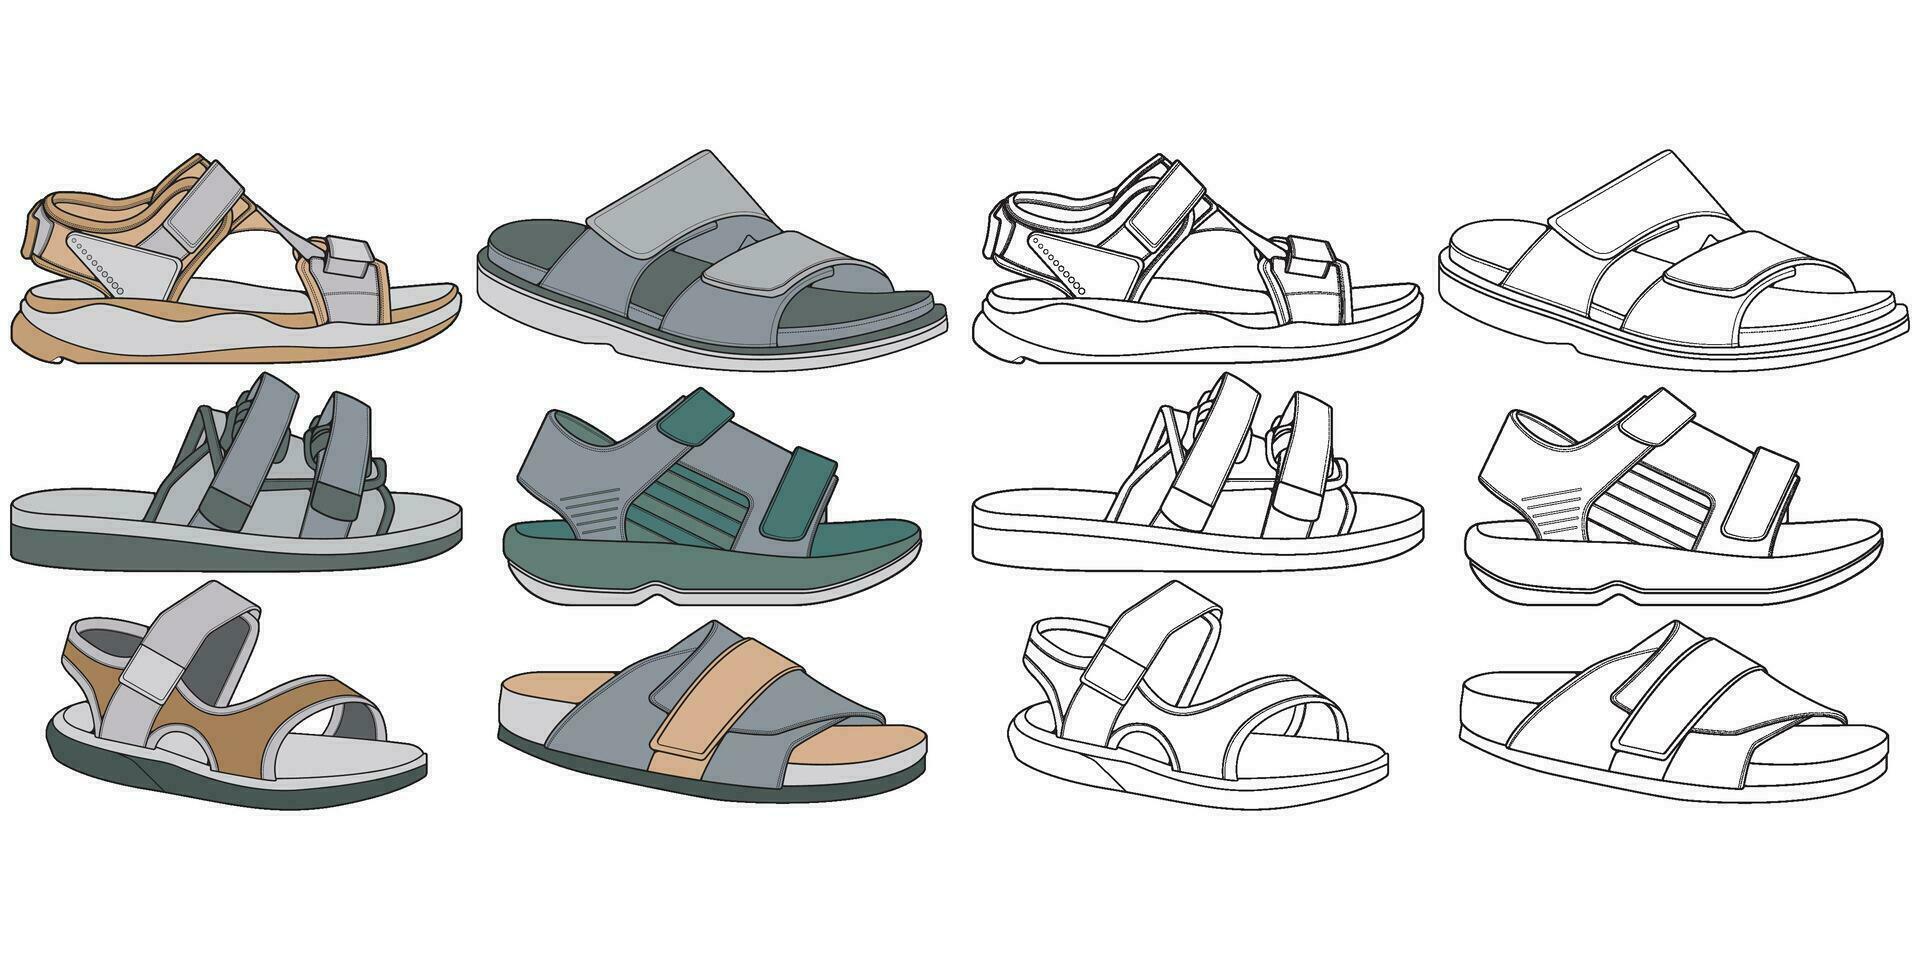 Correa sandalias colorante dibujo vector, Correa sandalias dibujado en un bosquejo estilo, empaquetar Correa sandalias modelo lleno color, vector ilustración.